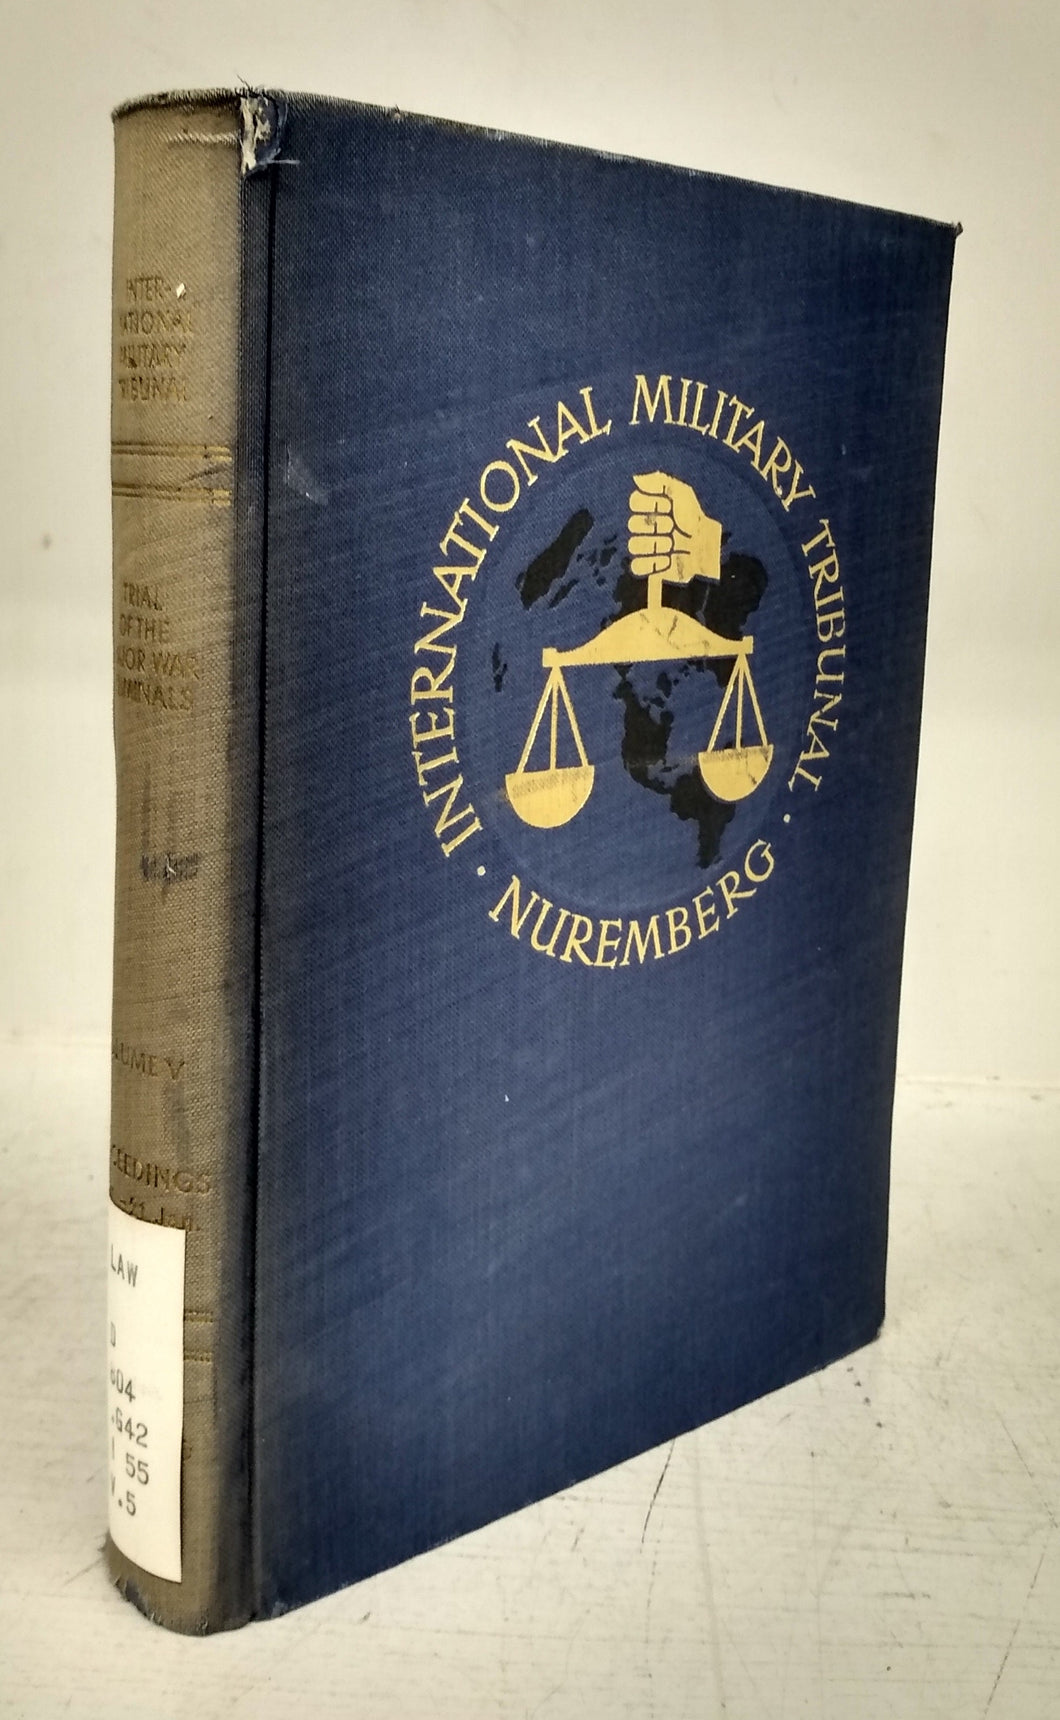 Trial of the Major War Criminals before the International Military Tribunal, Nuremberg, 14 November 1945 - 1 October 1946 (Volume V)